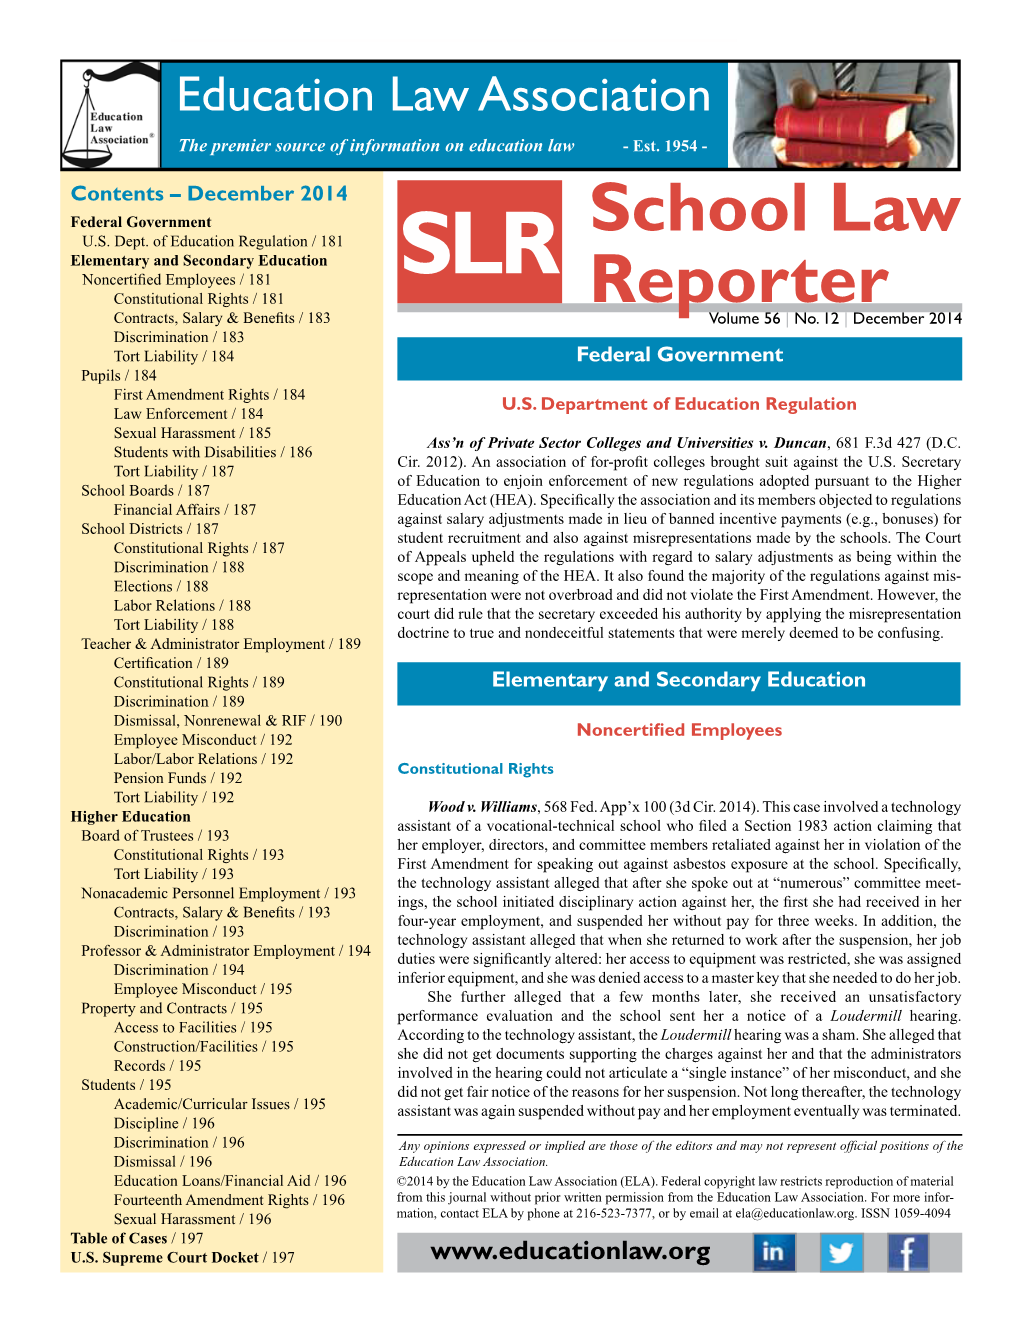 School Law Reporter December 2014